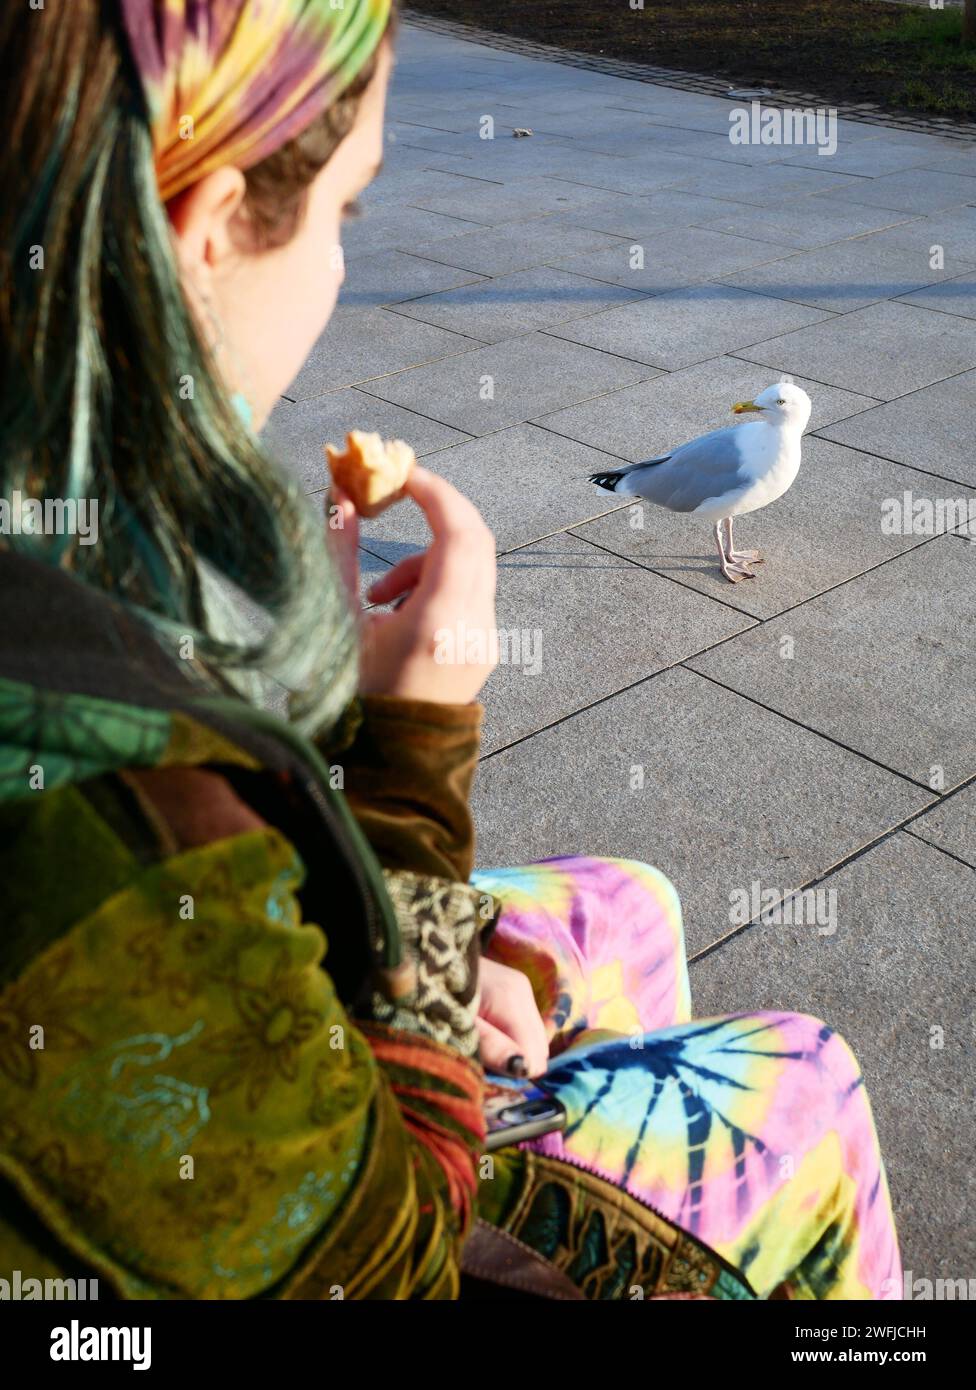 Gierige Möwenpest belästigt eine Person, die draußen einen Snack isst. Exmouth, Devon, Großbritannien Stockfoto